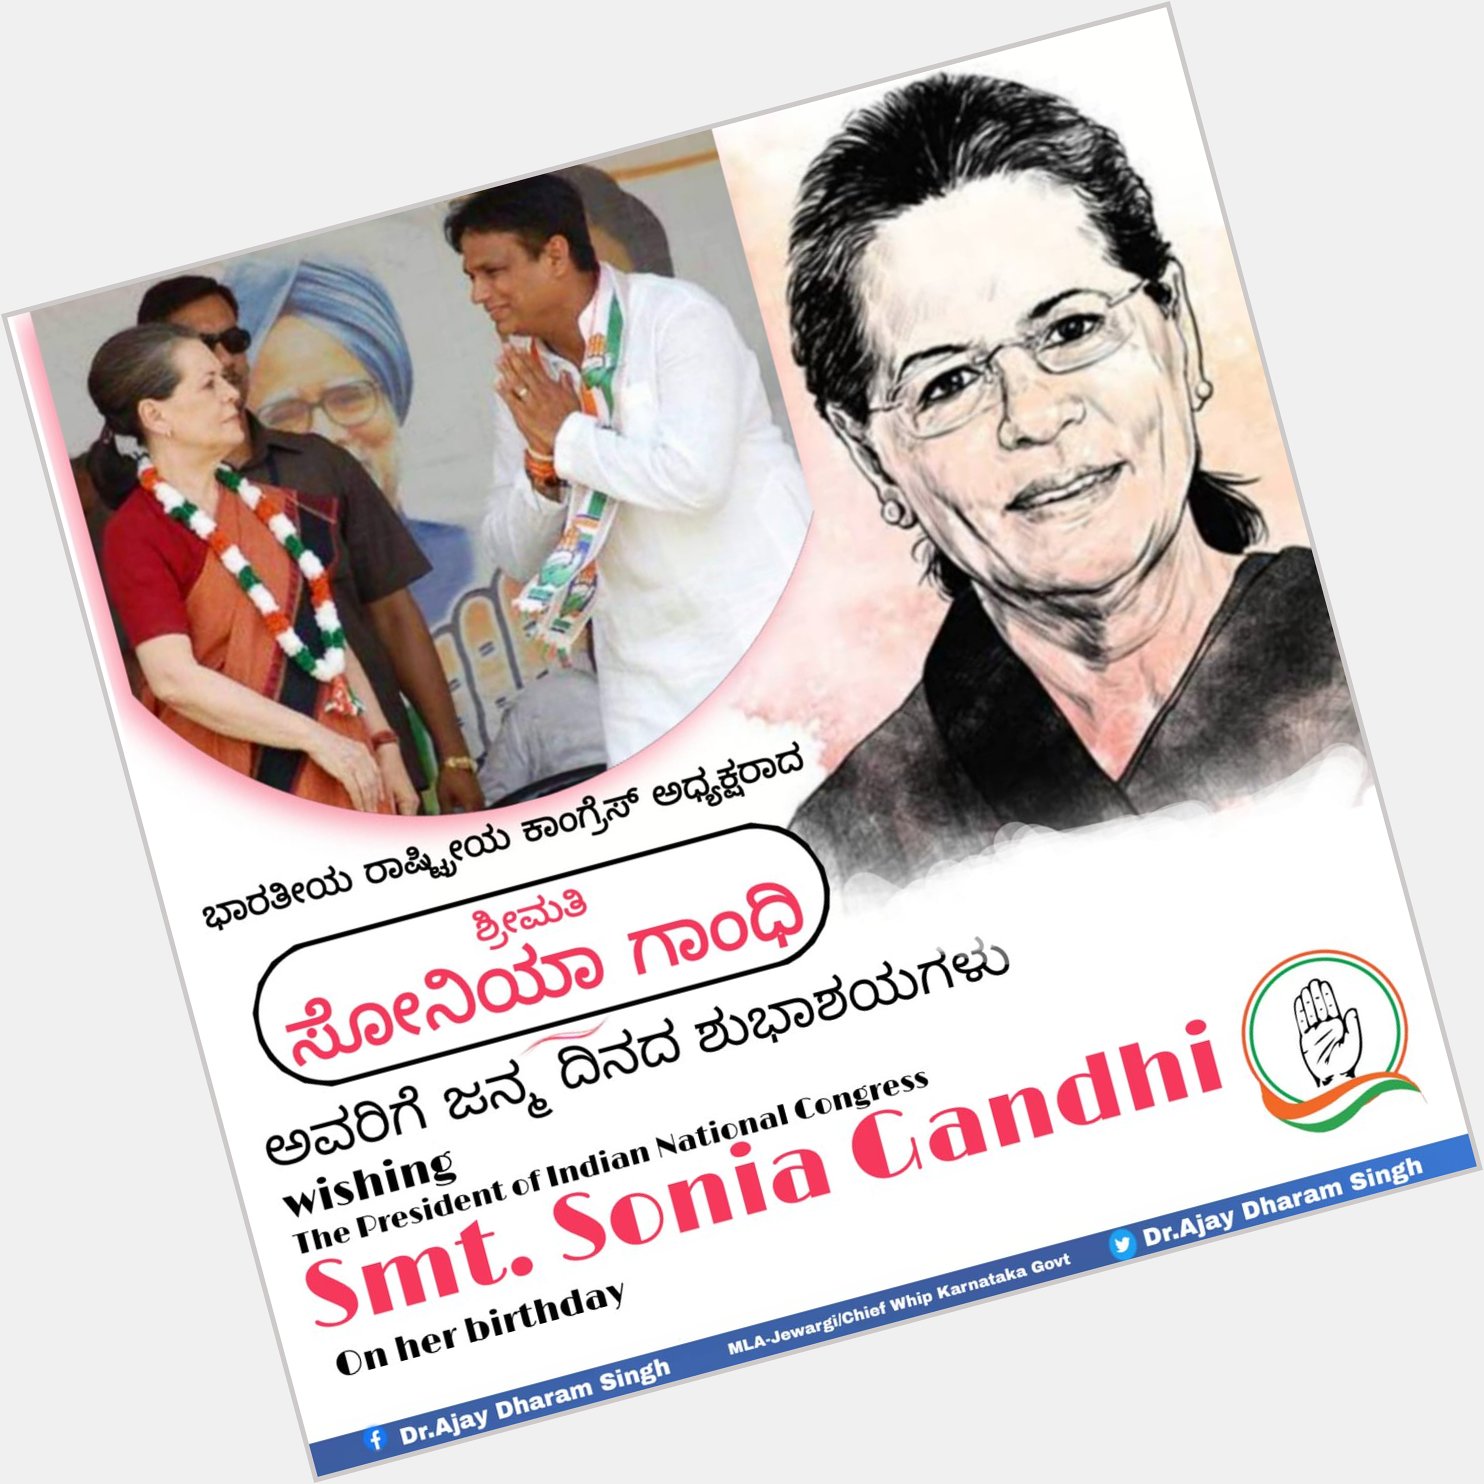 Wishing President Smt. Sonia Gandhi Ji a very happy birthday. 